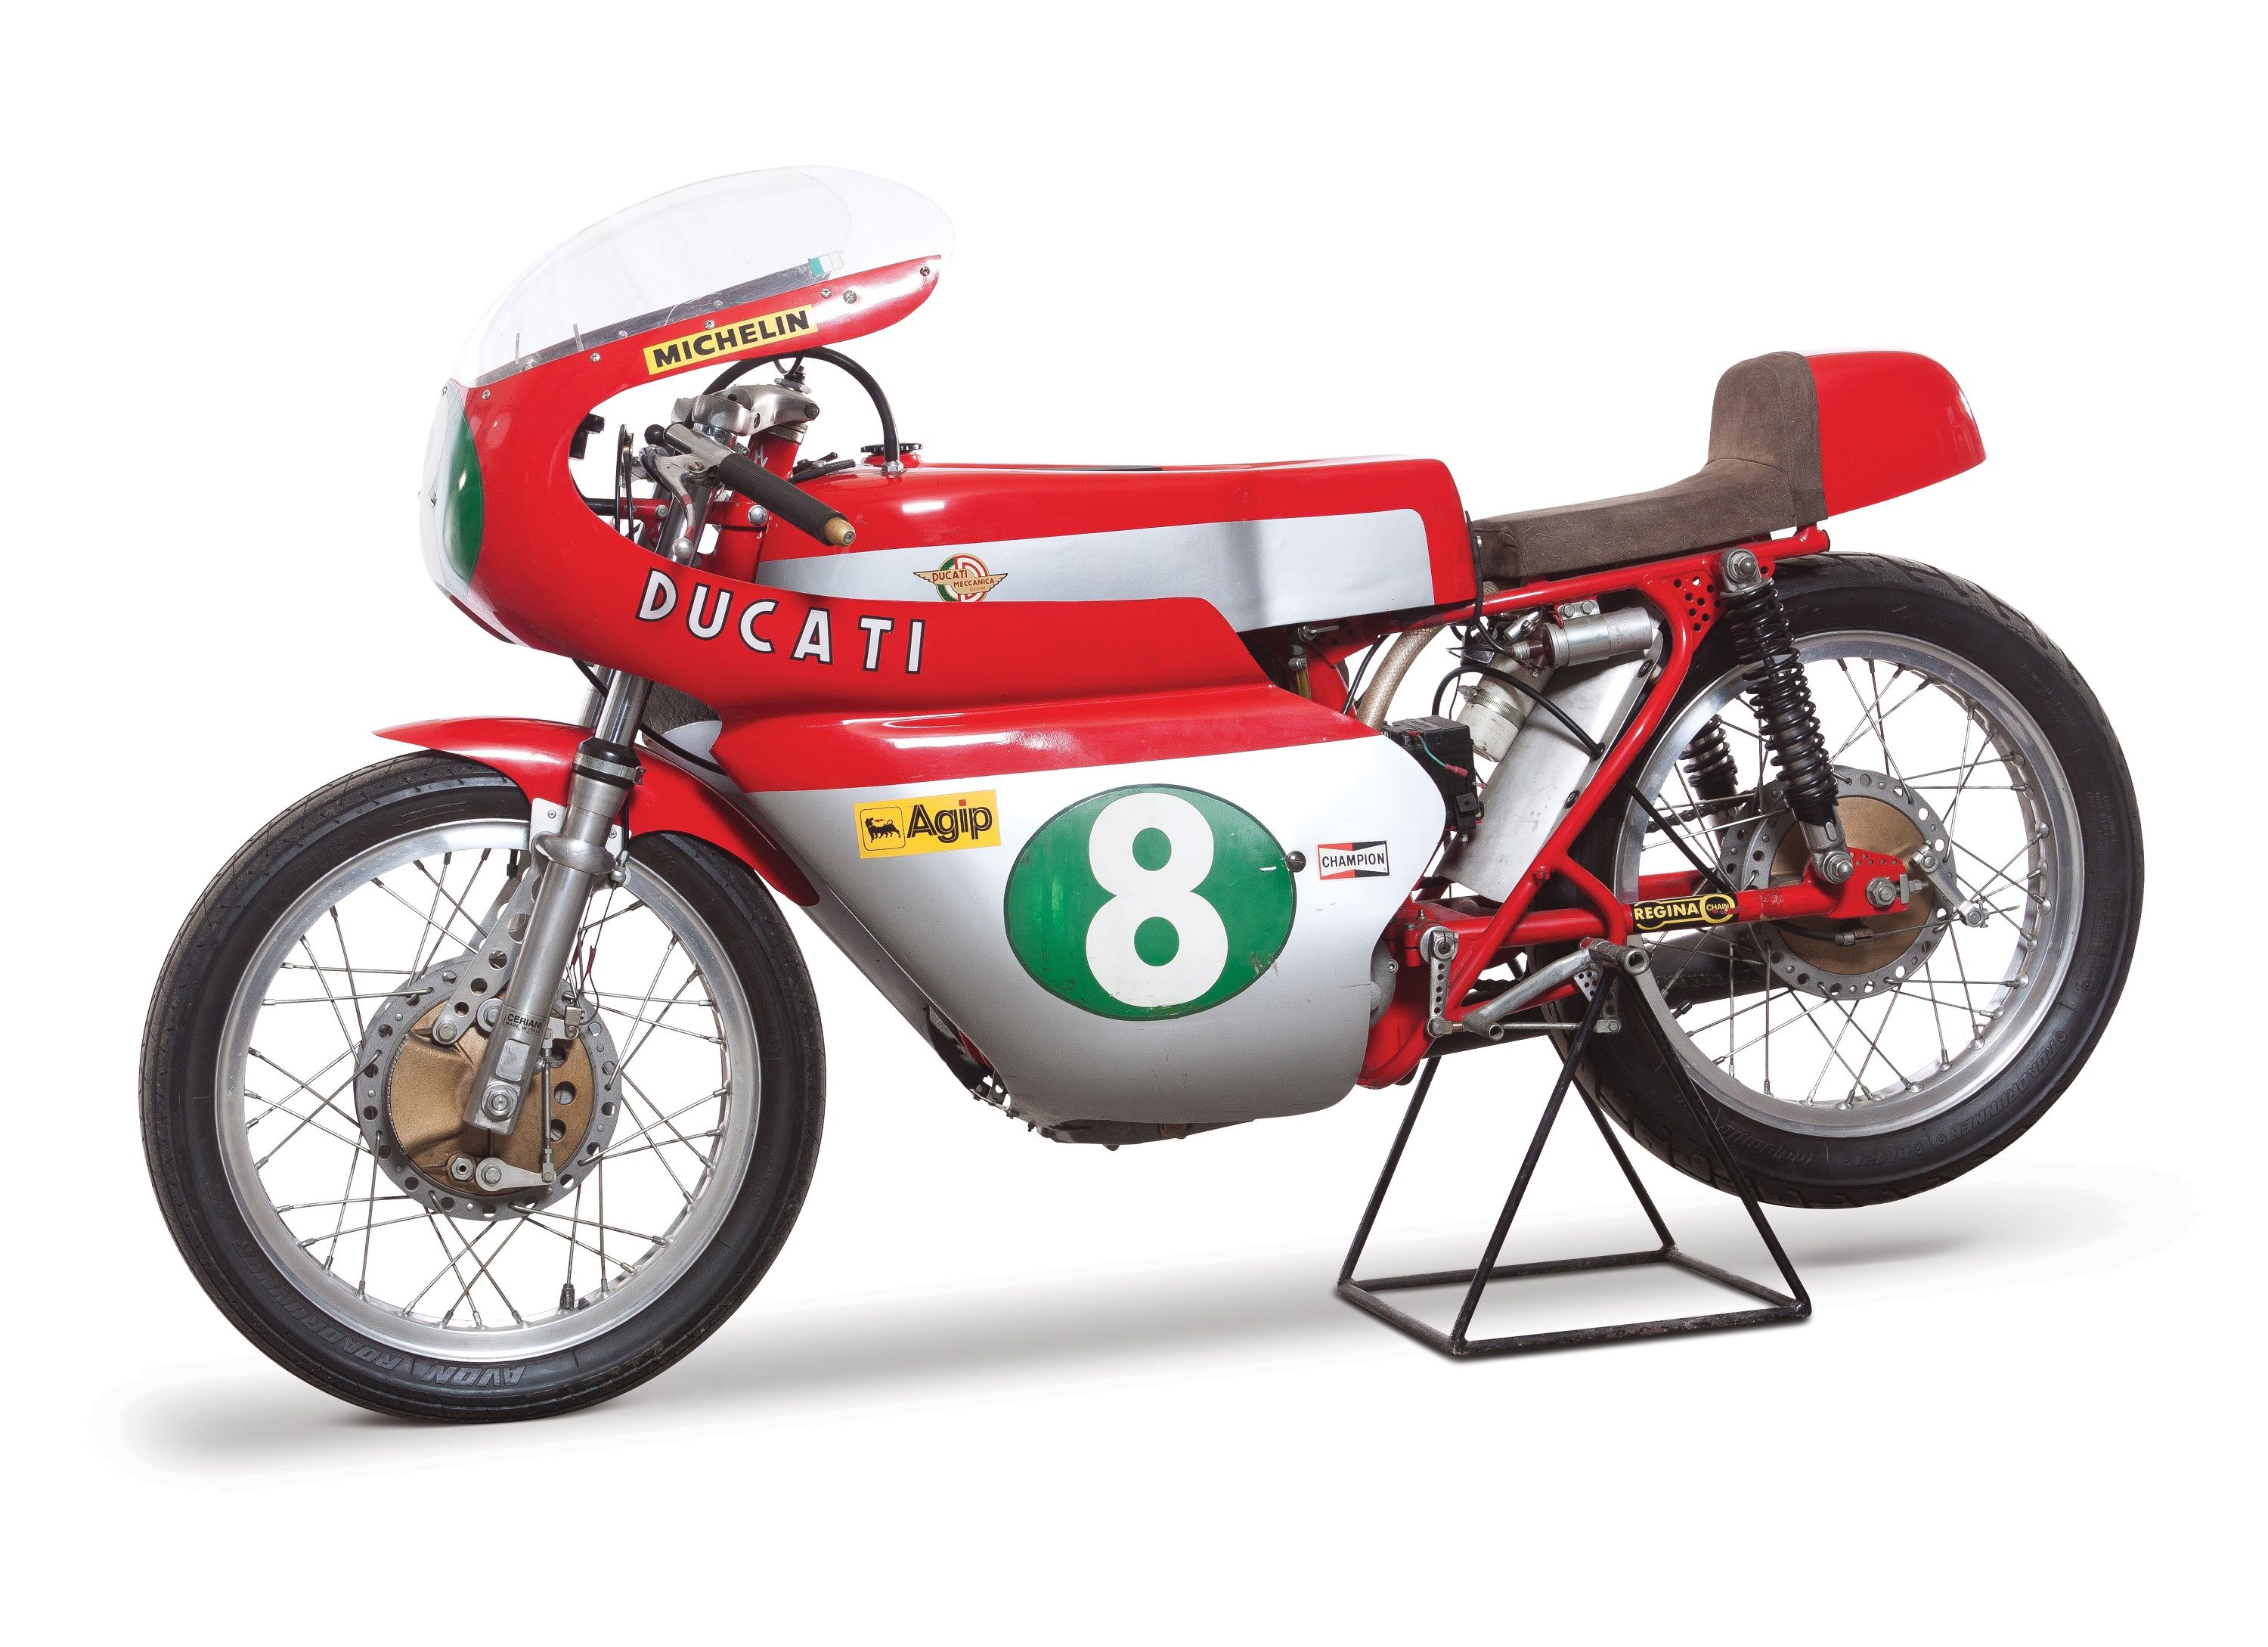 1965 Ducati 250 GP Replica